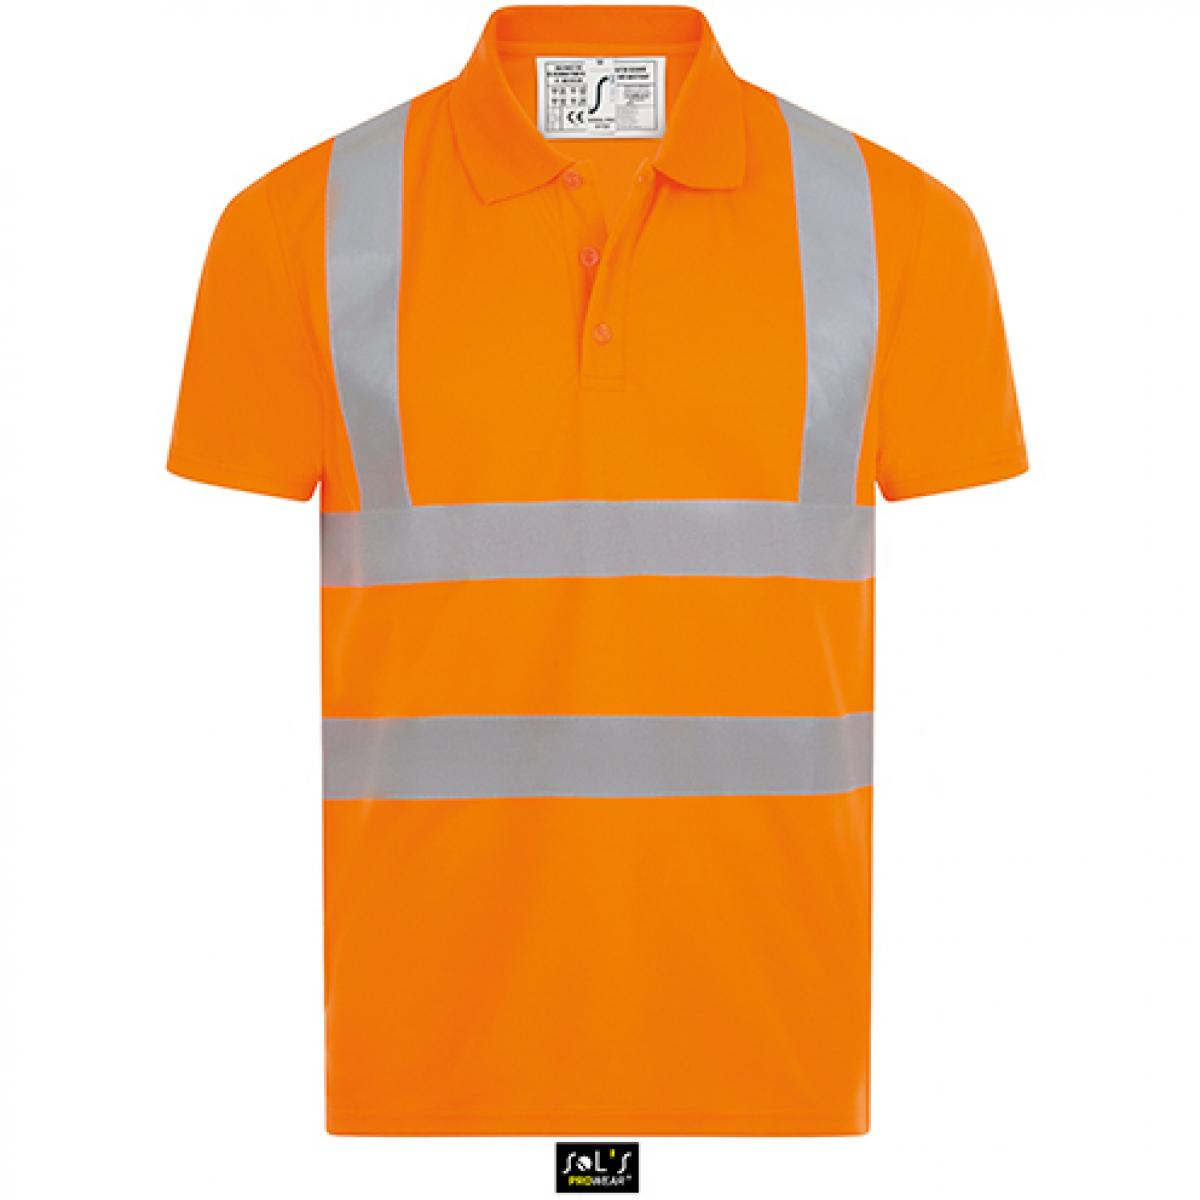 Hersteller: SOLs ProWear Herstellernummer: 01722 Artikelbezeichnung: Herren Signal Pro Arbeits Polo Shirt Farbe: Neon Orange